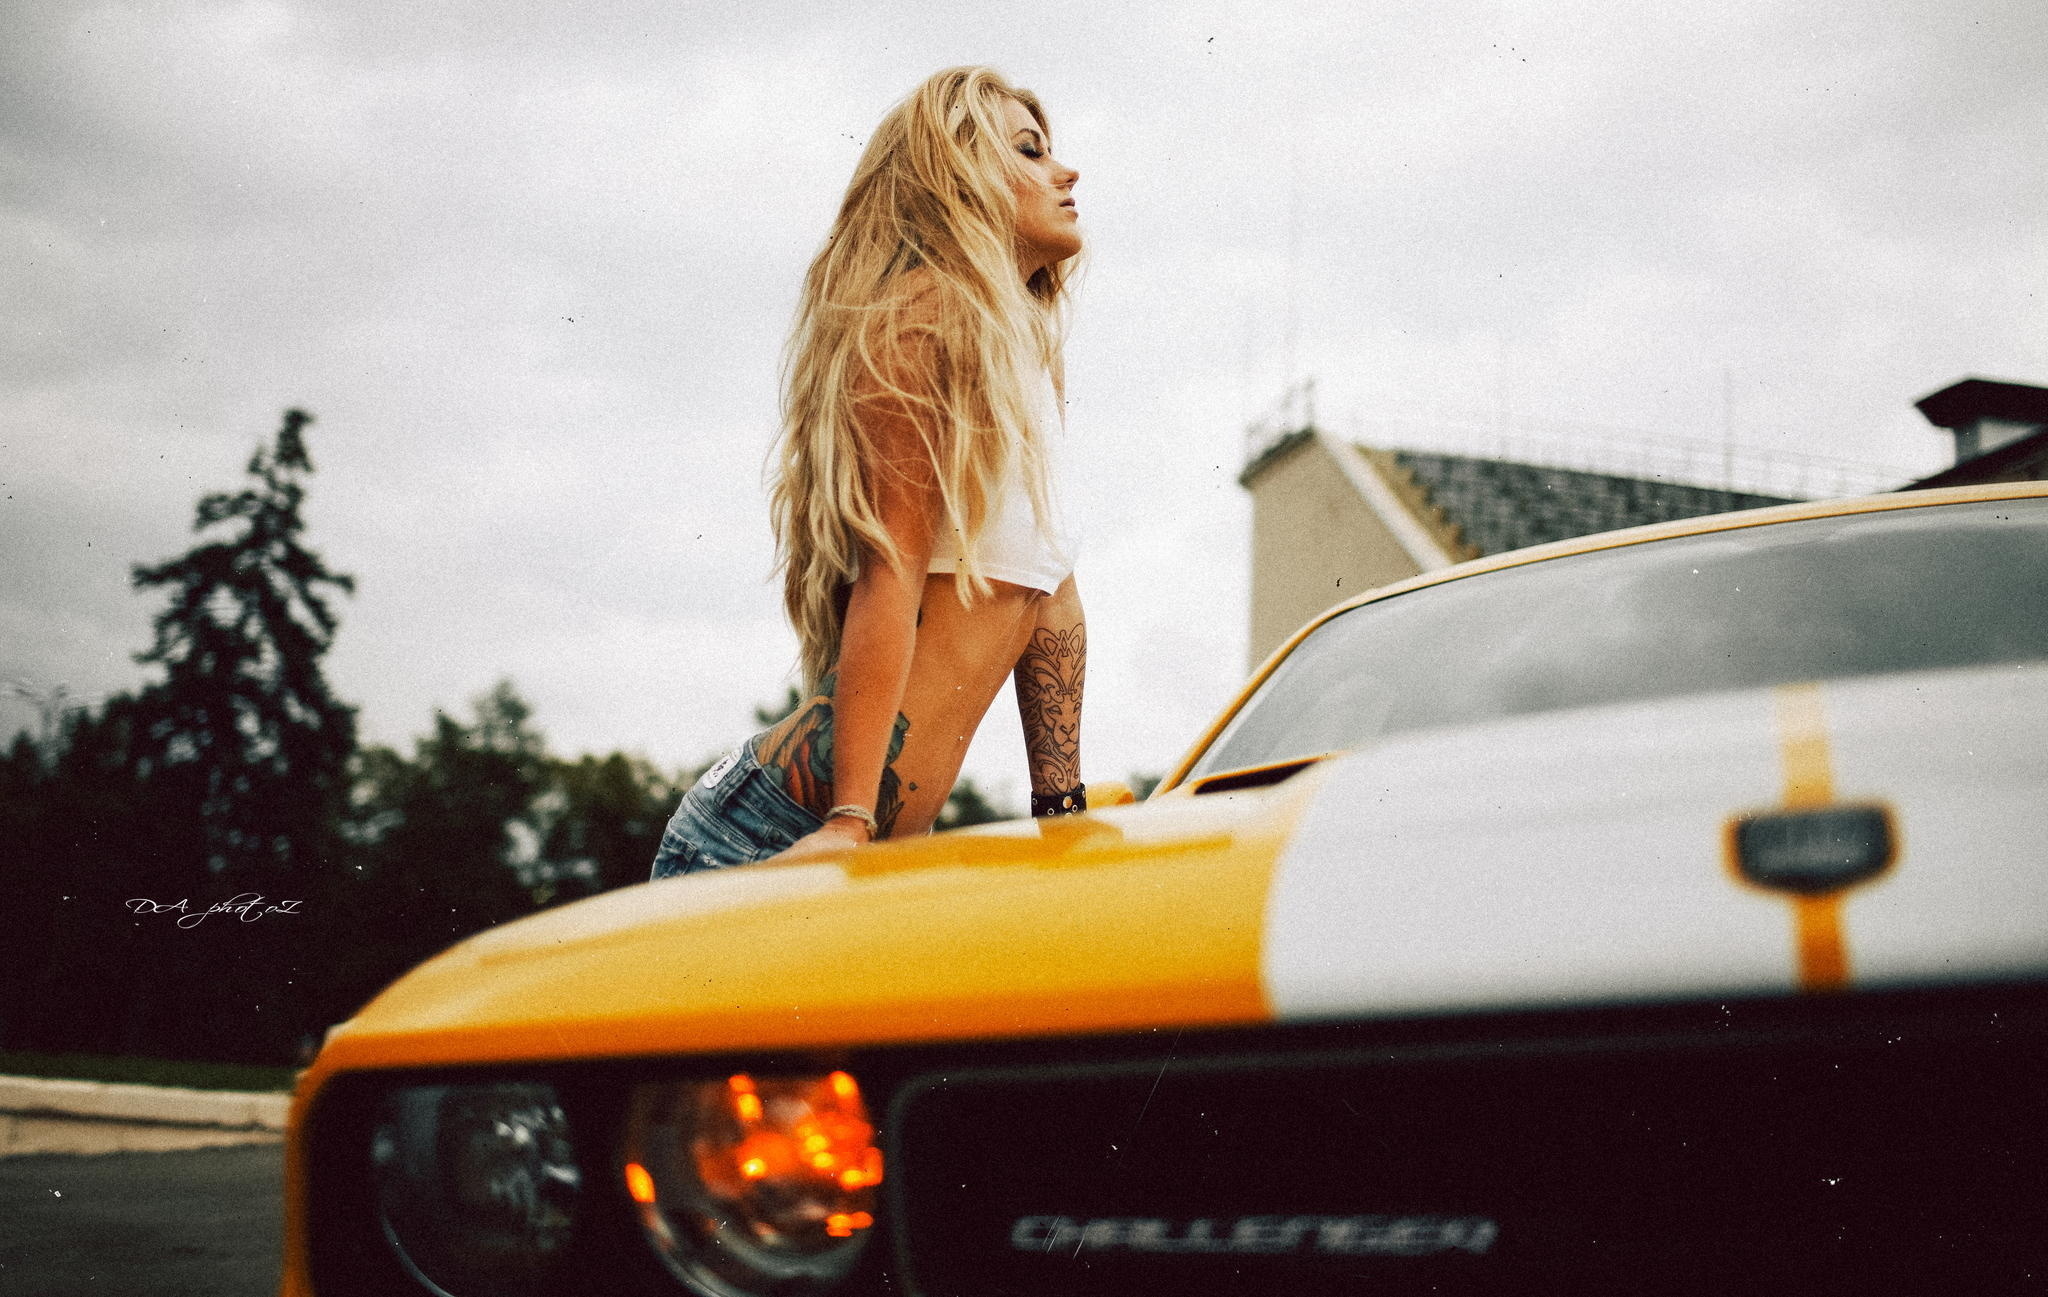 Возле желтого авто посреди дороги в эротической одежде блонда